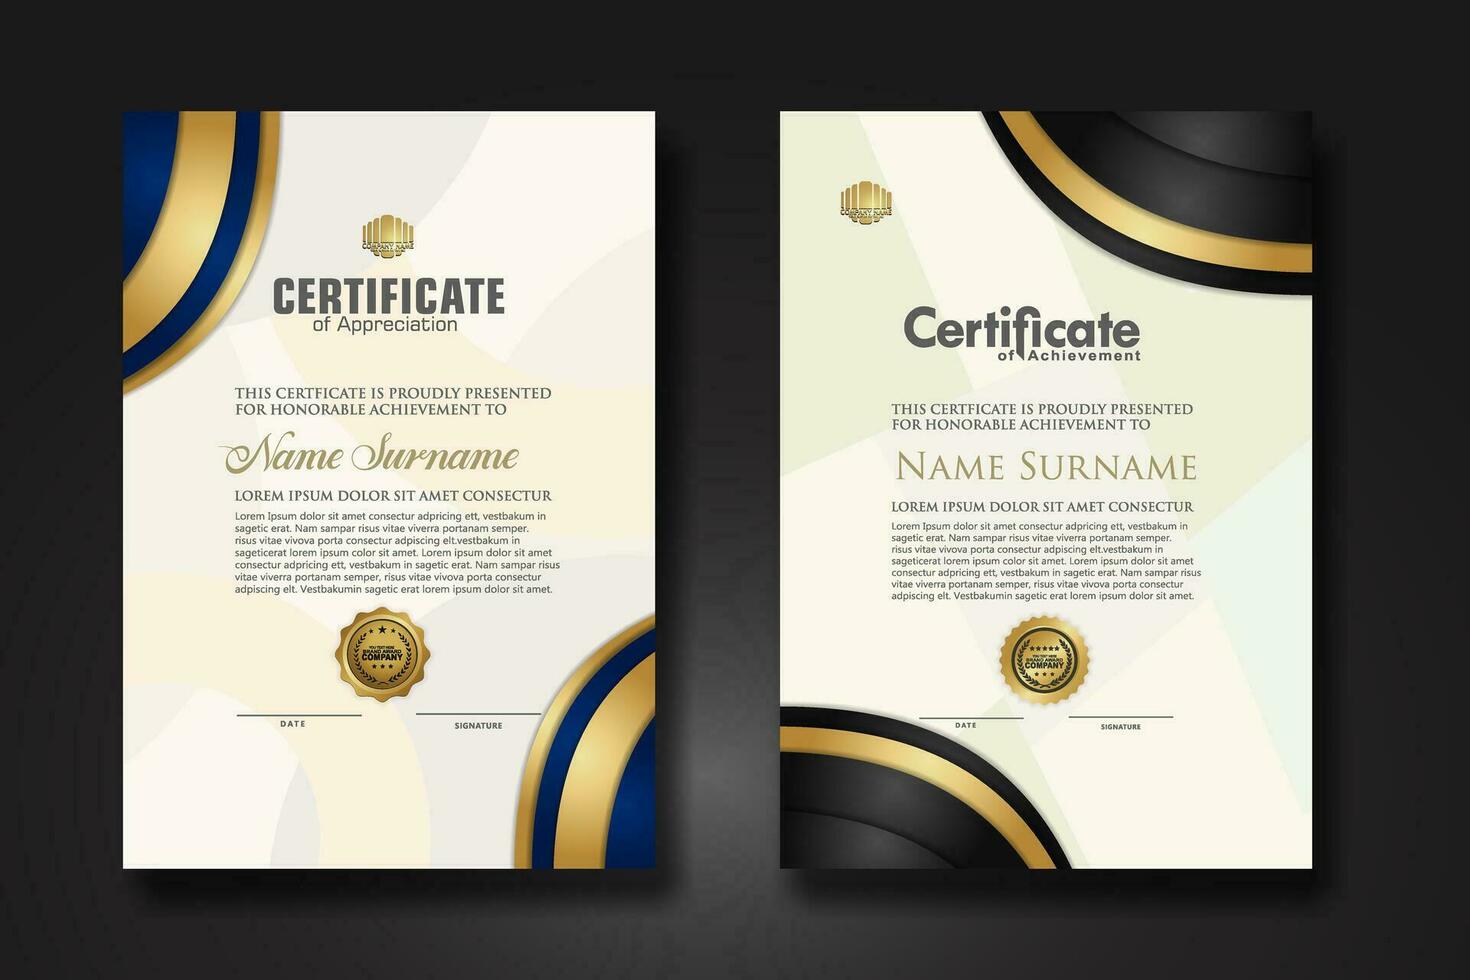 Set luxury certificate template vector